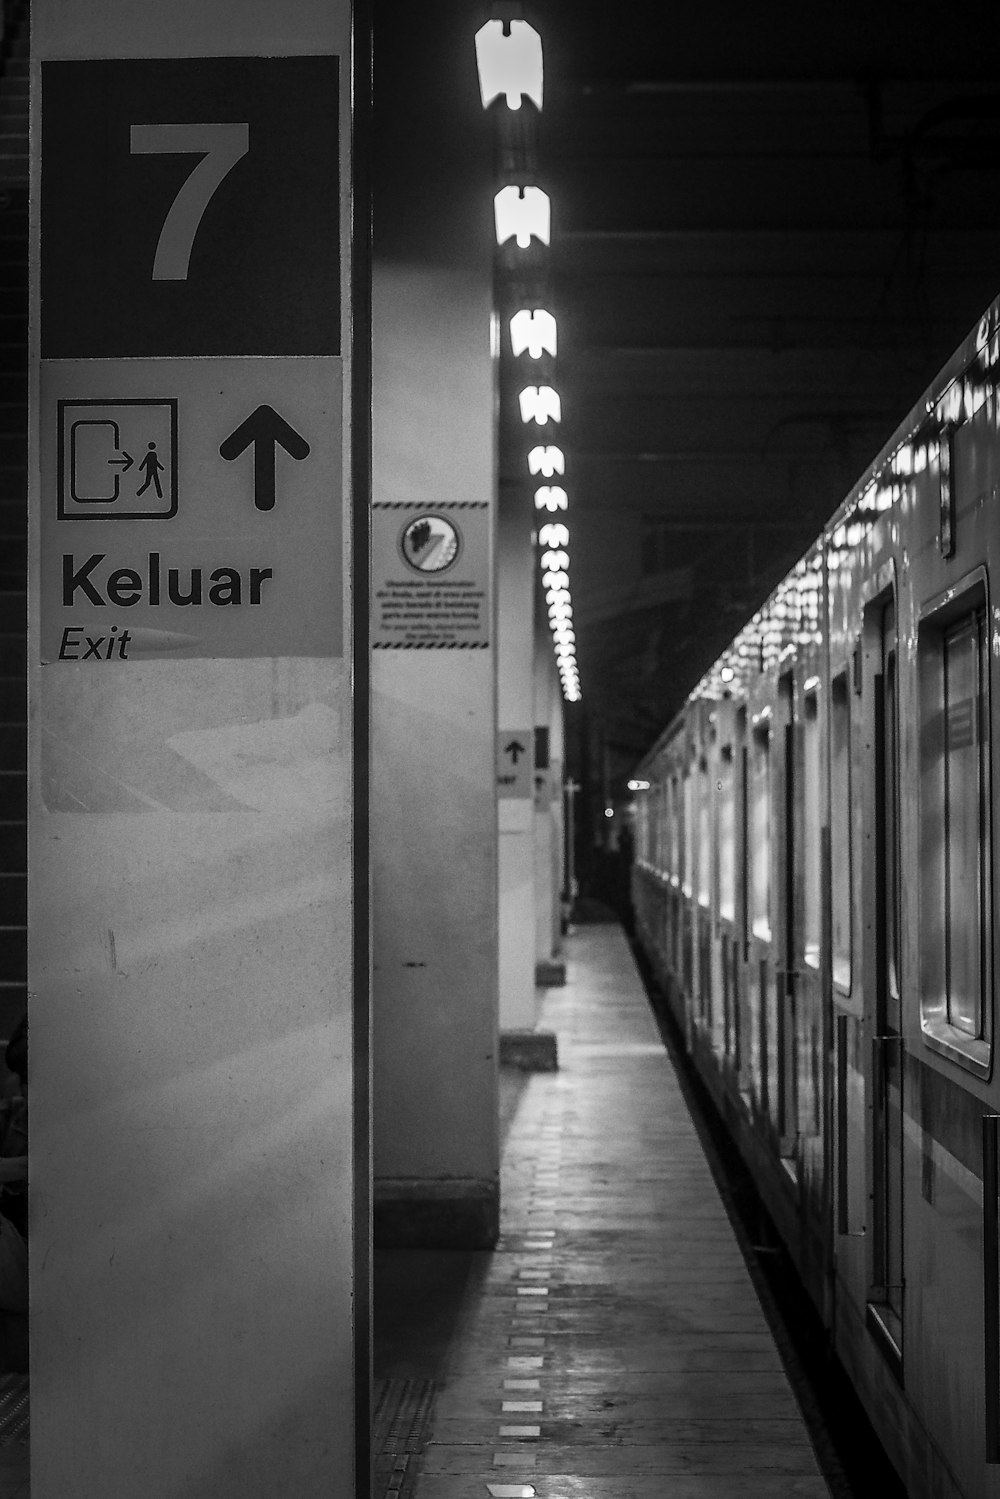 Una foto en blanco y negro de un tren en una estación